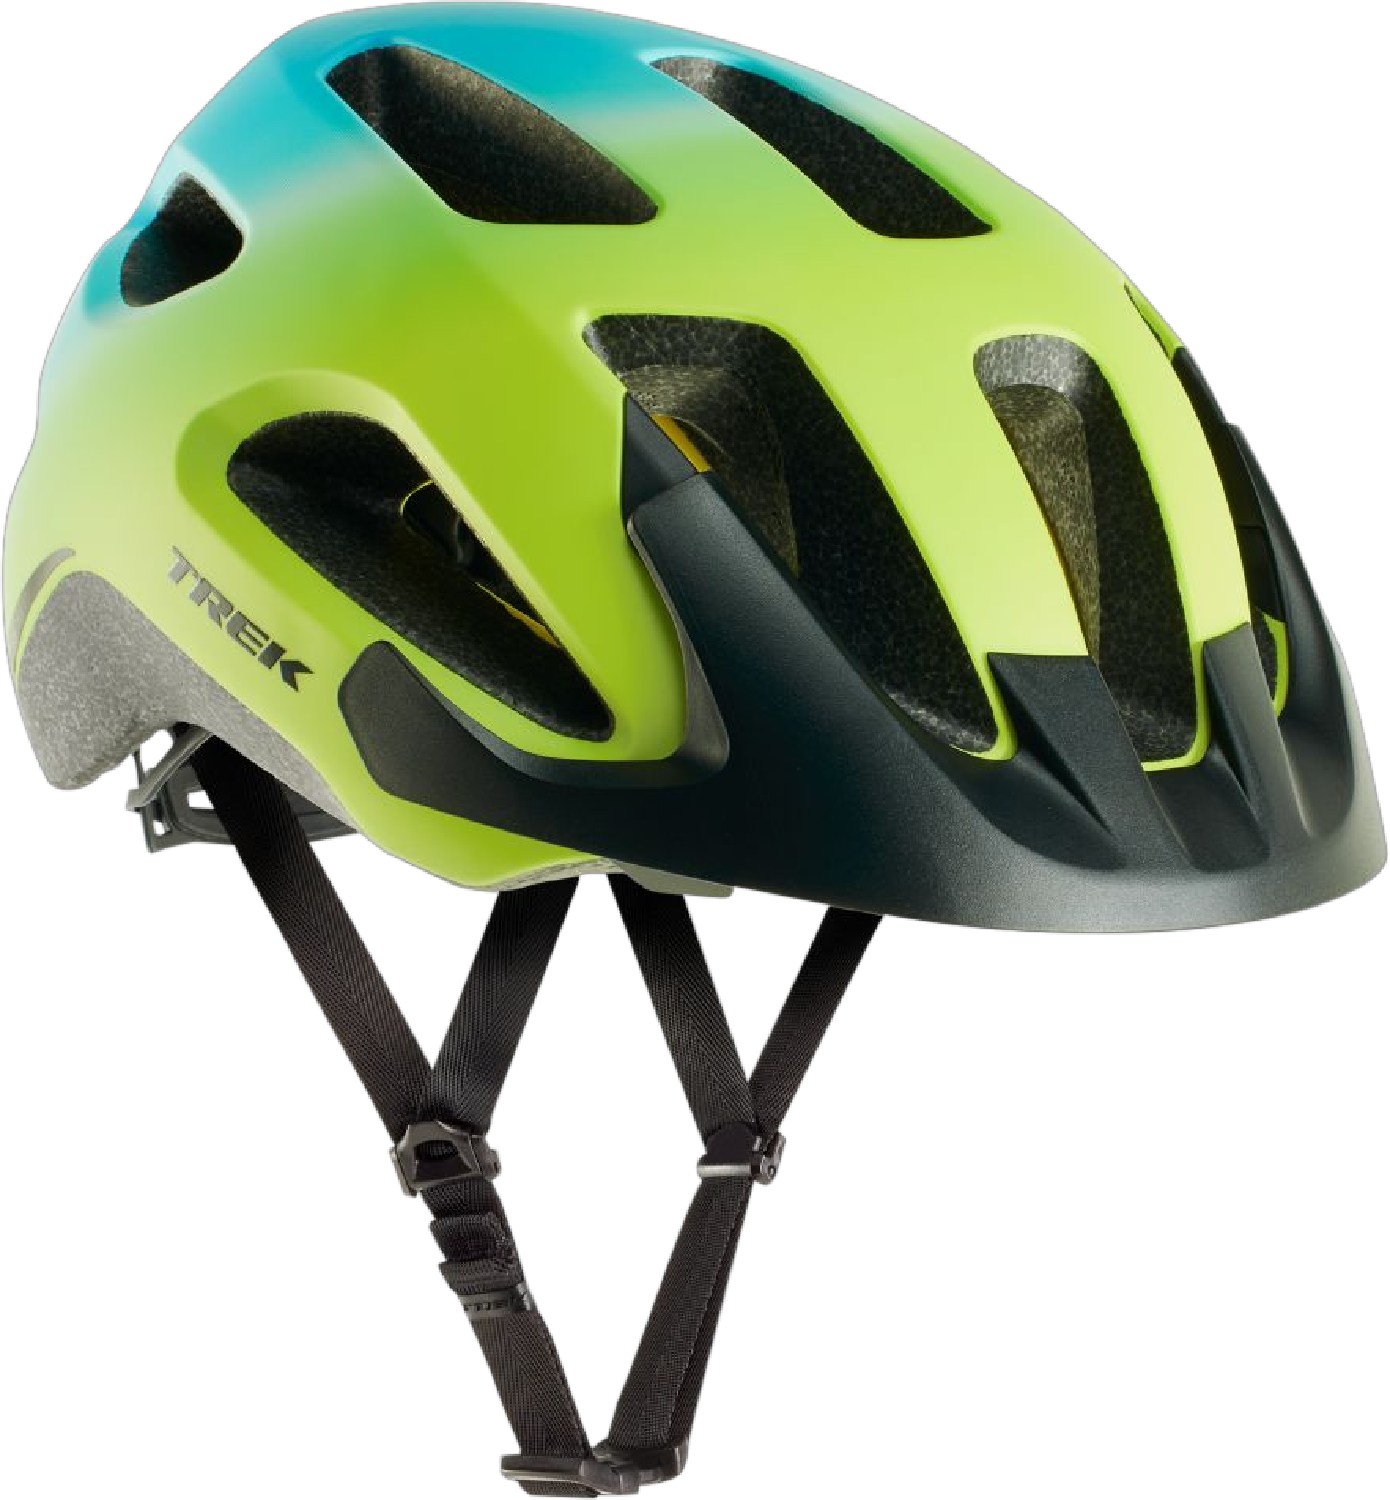 Велосипедный шлем Solstice Mips Trek, зеленый велосипедный задний переключатель передач 2 шт вешалка для трека 322175 trek elite trek zтеперь trek 7 2 fx wsd гэри фишера mendota mech dropout